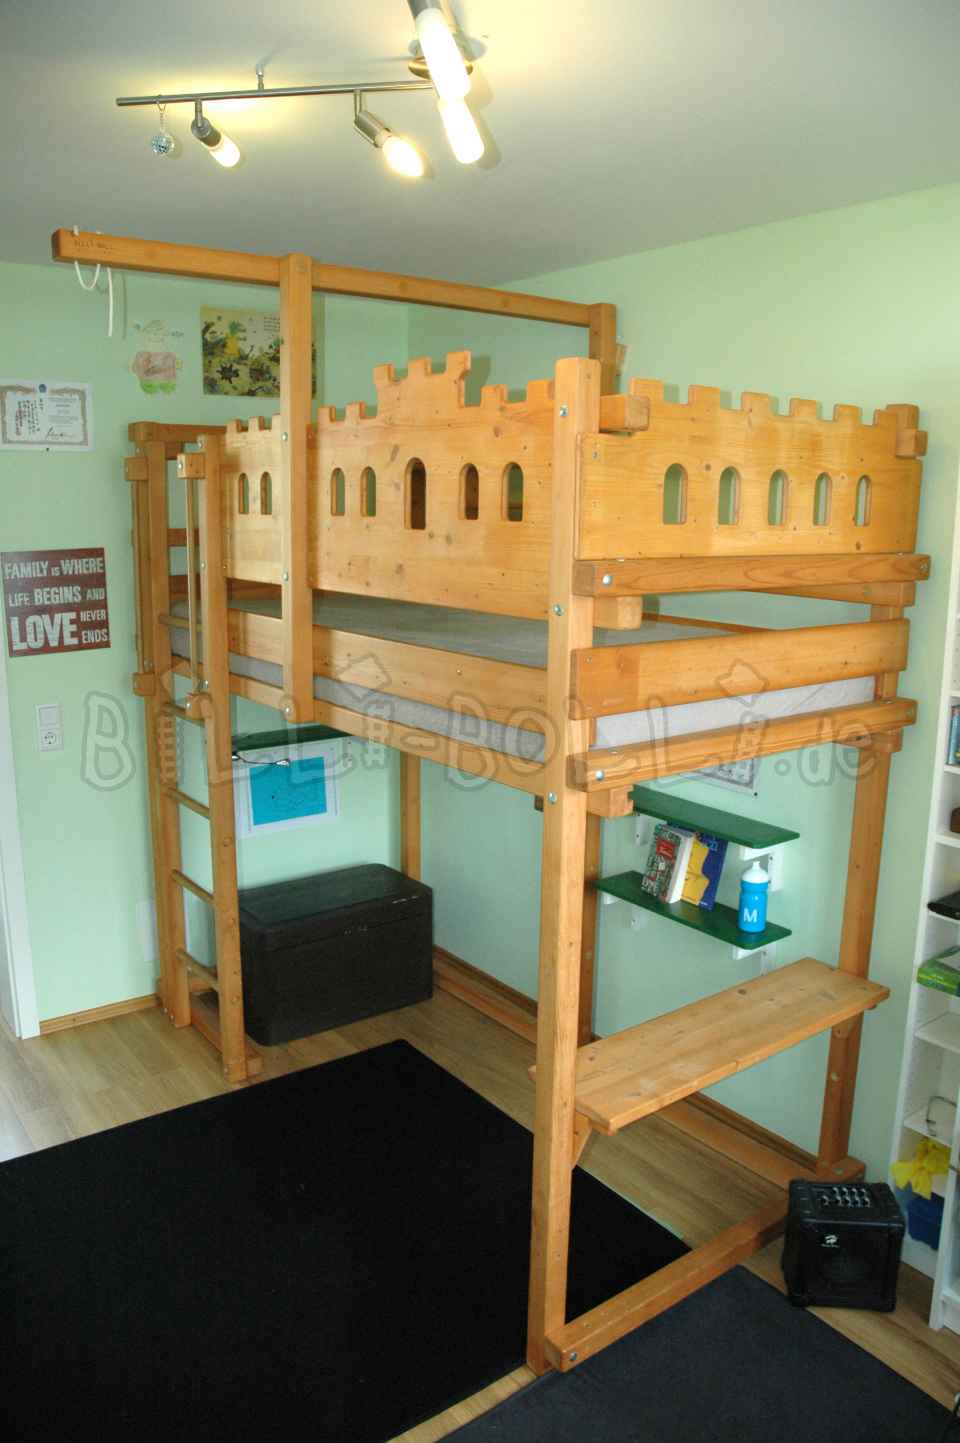 मचान बिस्तर जो बच्चे के साथ बढ़ता है, 90 x 200 सेमी, शहद के रंग का तेल लगा हुआ स्प्रूस (कोटि: मचान बिस्तर का इस्तेमाल किया)